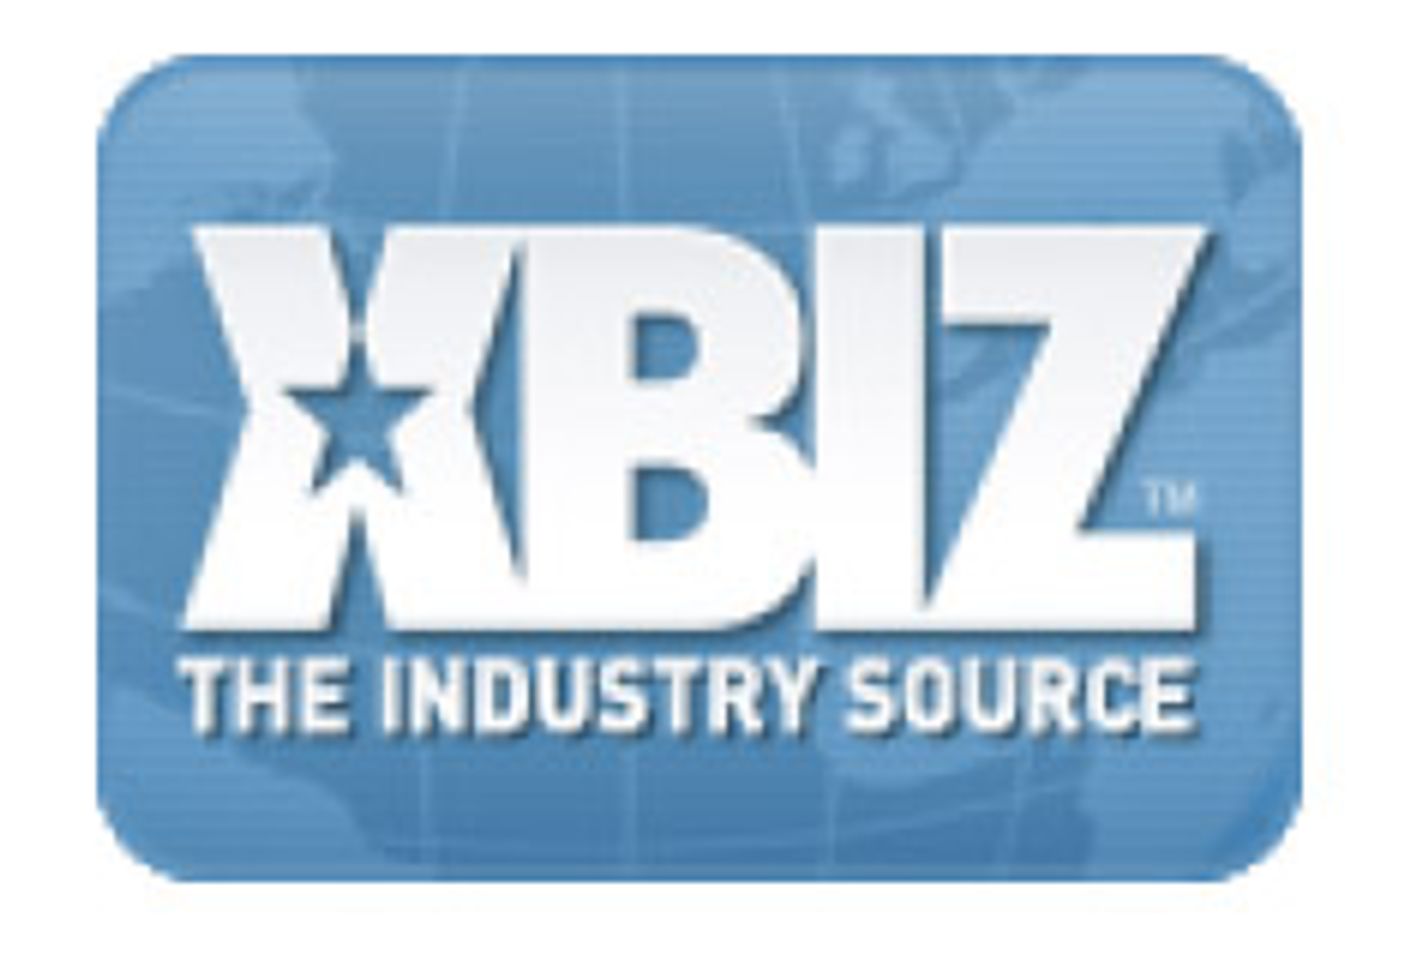 XBIZ Awards Winners Announced